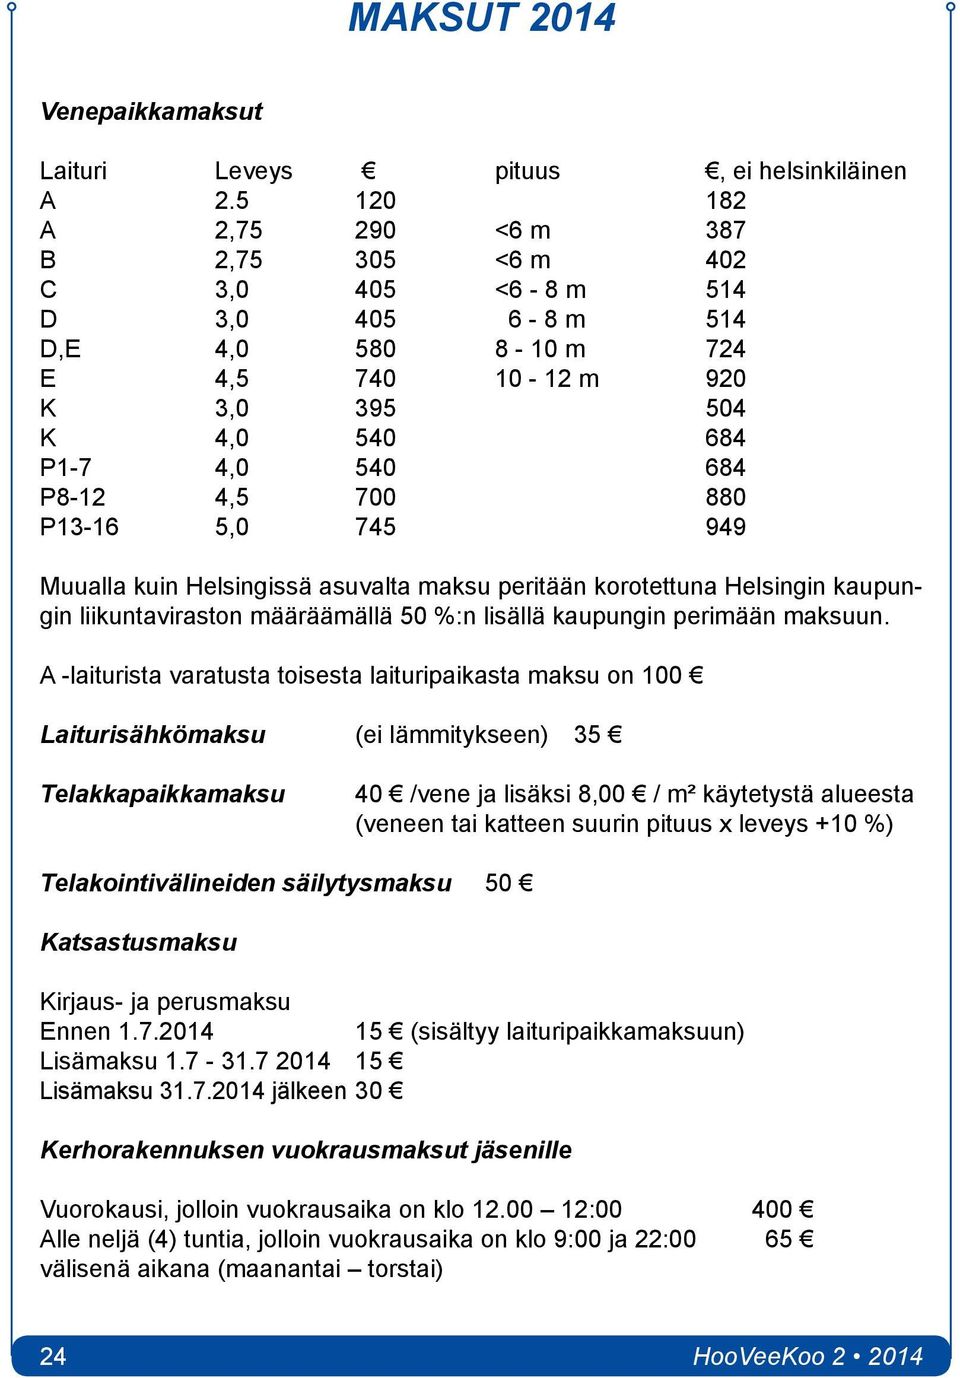 P13-16 5,0 745 949 Muualla kuin Helsingissä asuvalta maksu peritään korotettuna Helsingin kaupungin liikuntaviraston määräämällä 50 %:n lisällä kaupungin perimään maksuun.